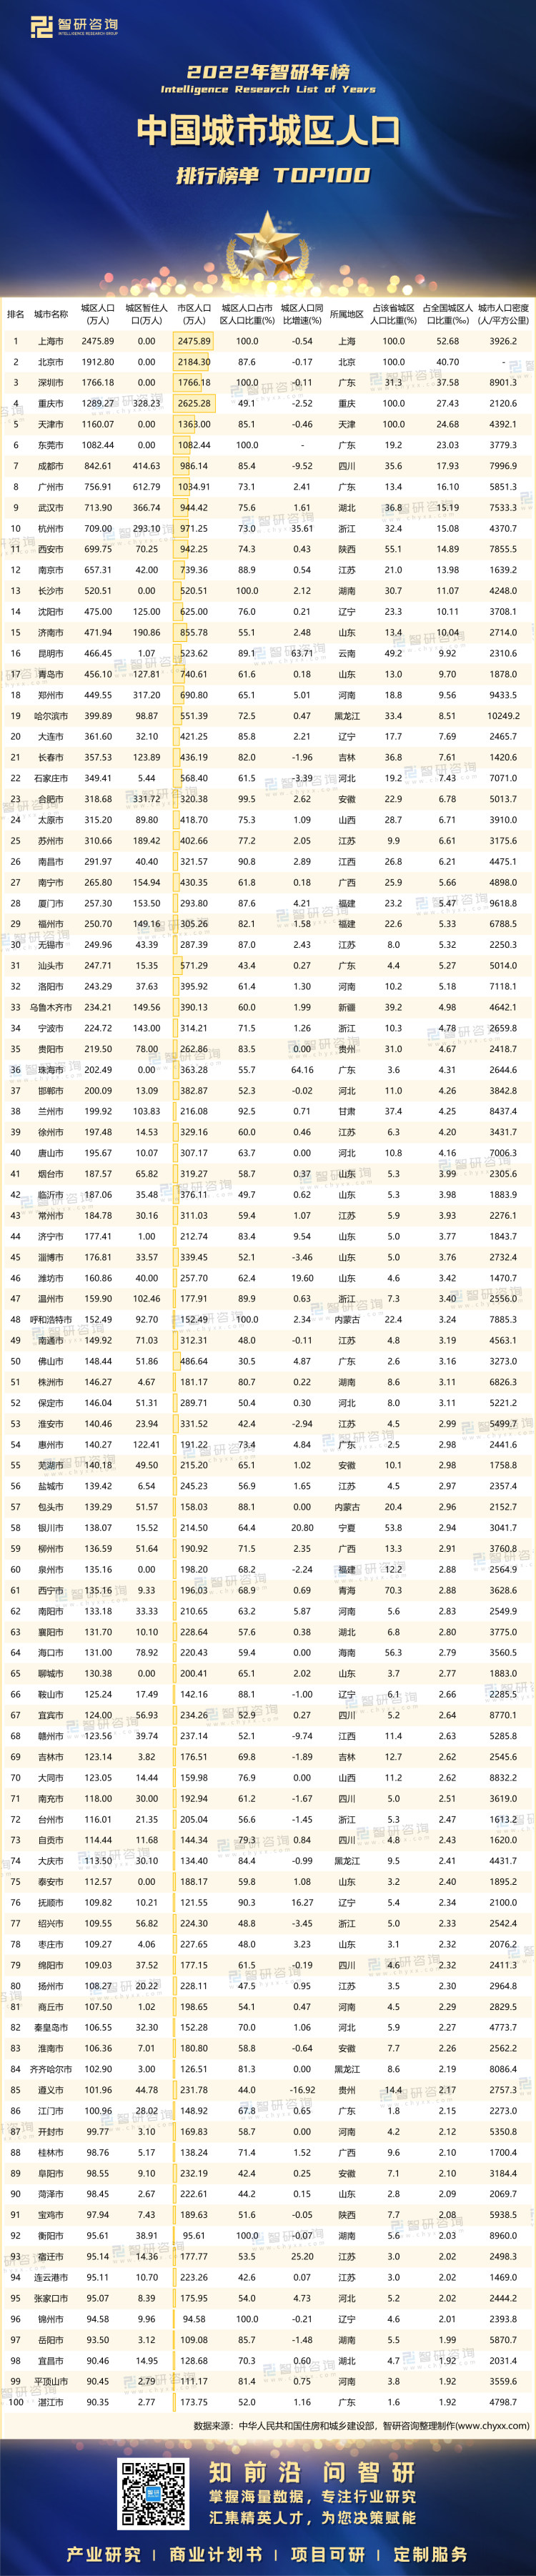 1019：2022年中国各城市城区人口-二维码